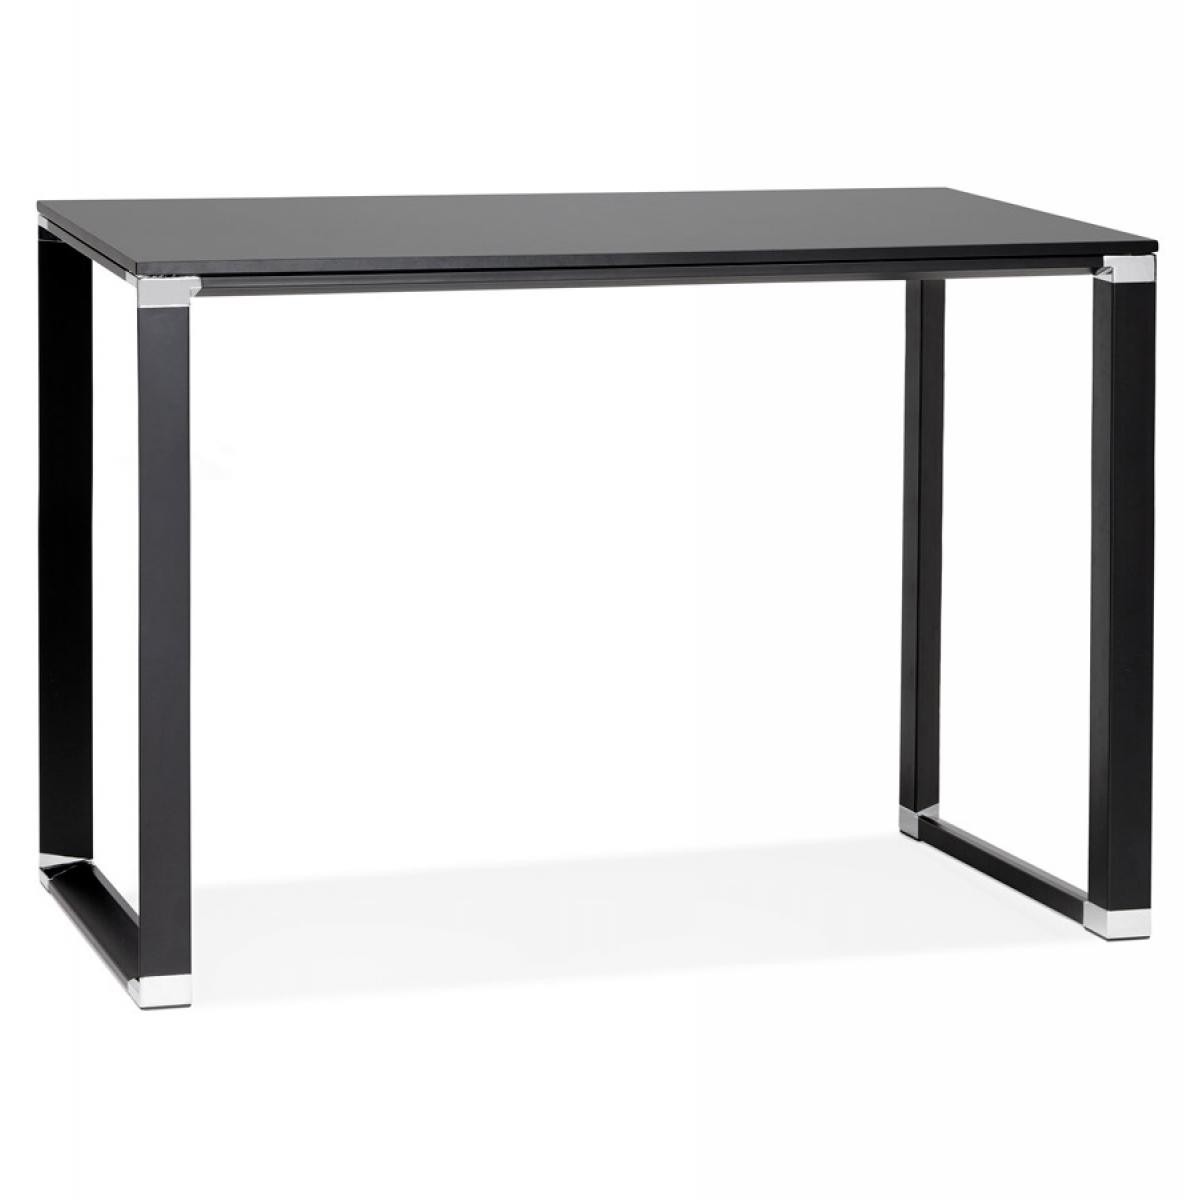 Alterego - Table haute / bureau haut 'XLINE HIGH TABLE' en bois noir - 140x70 cm - Bureaux